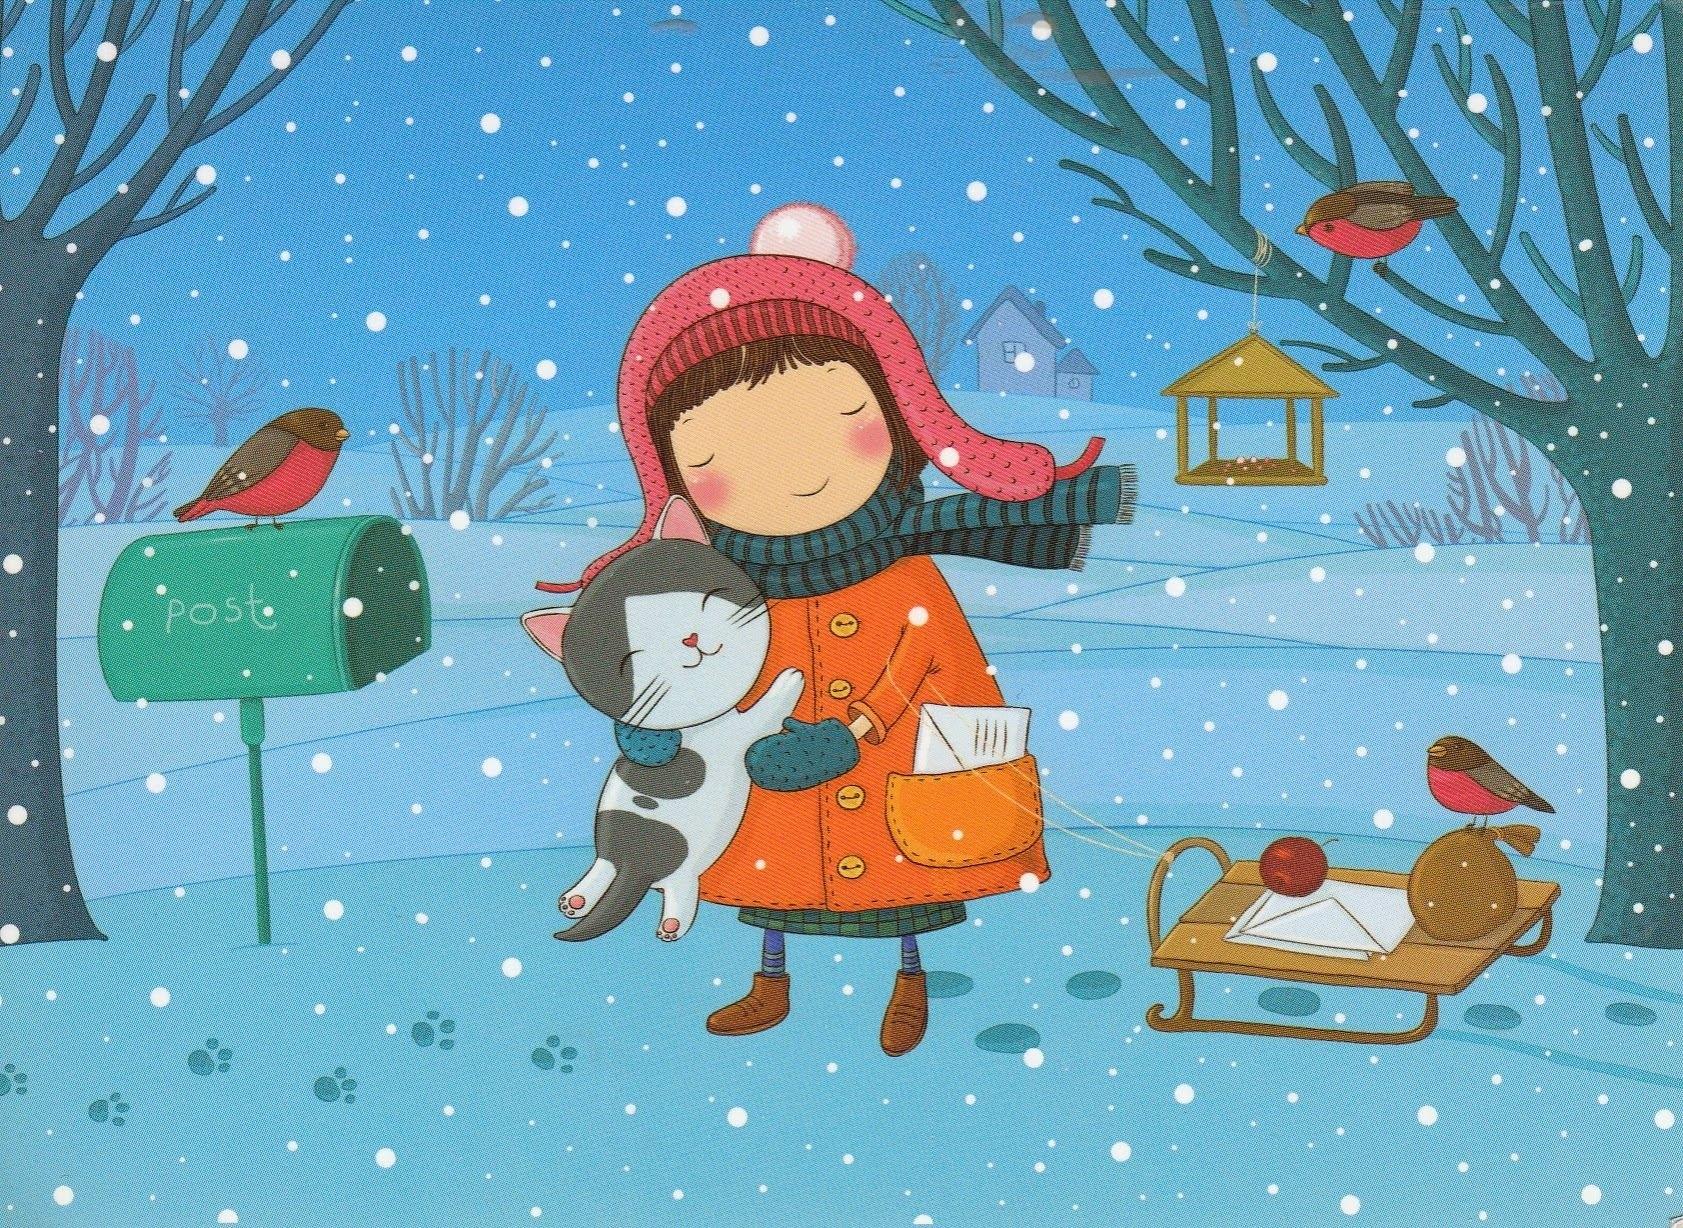 Начало зимы» картина Грибанова Игоря маслом на холсте — купить на ArtNow.ru